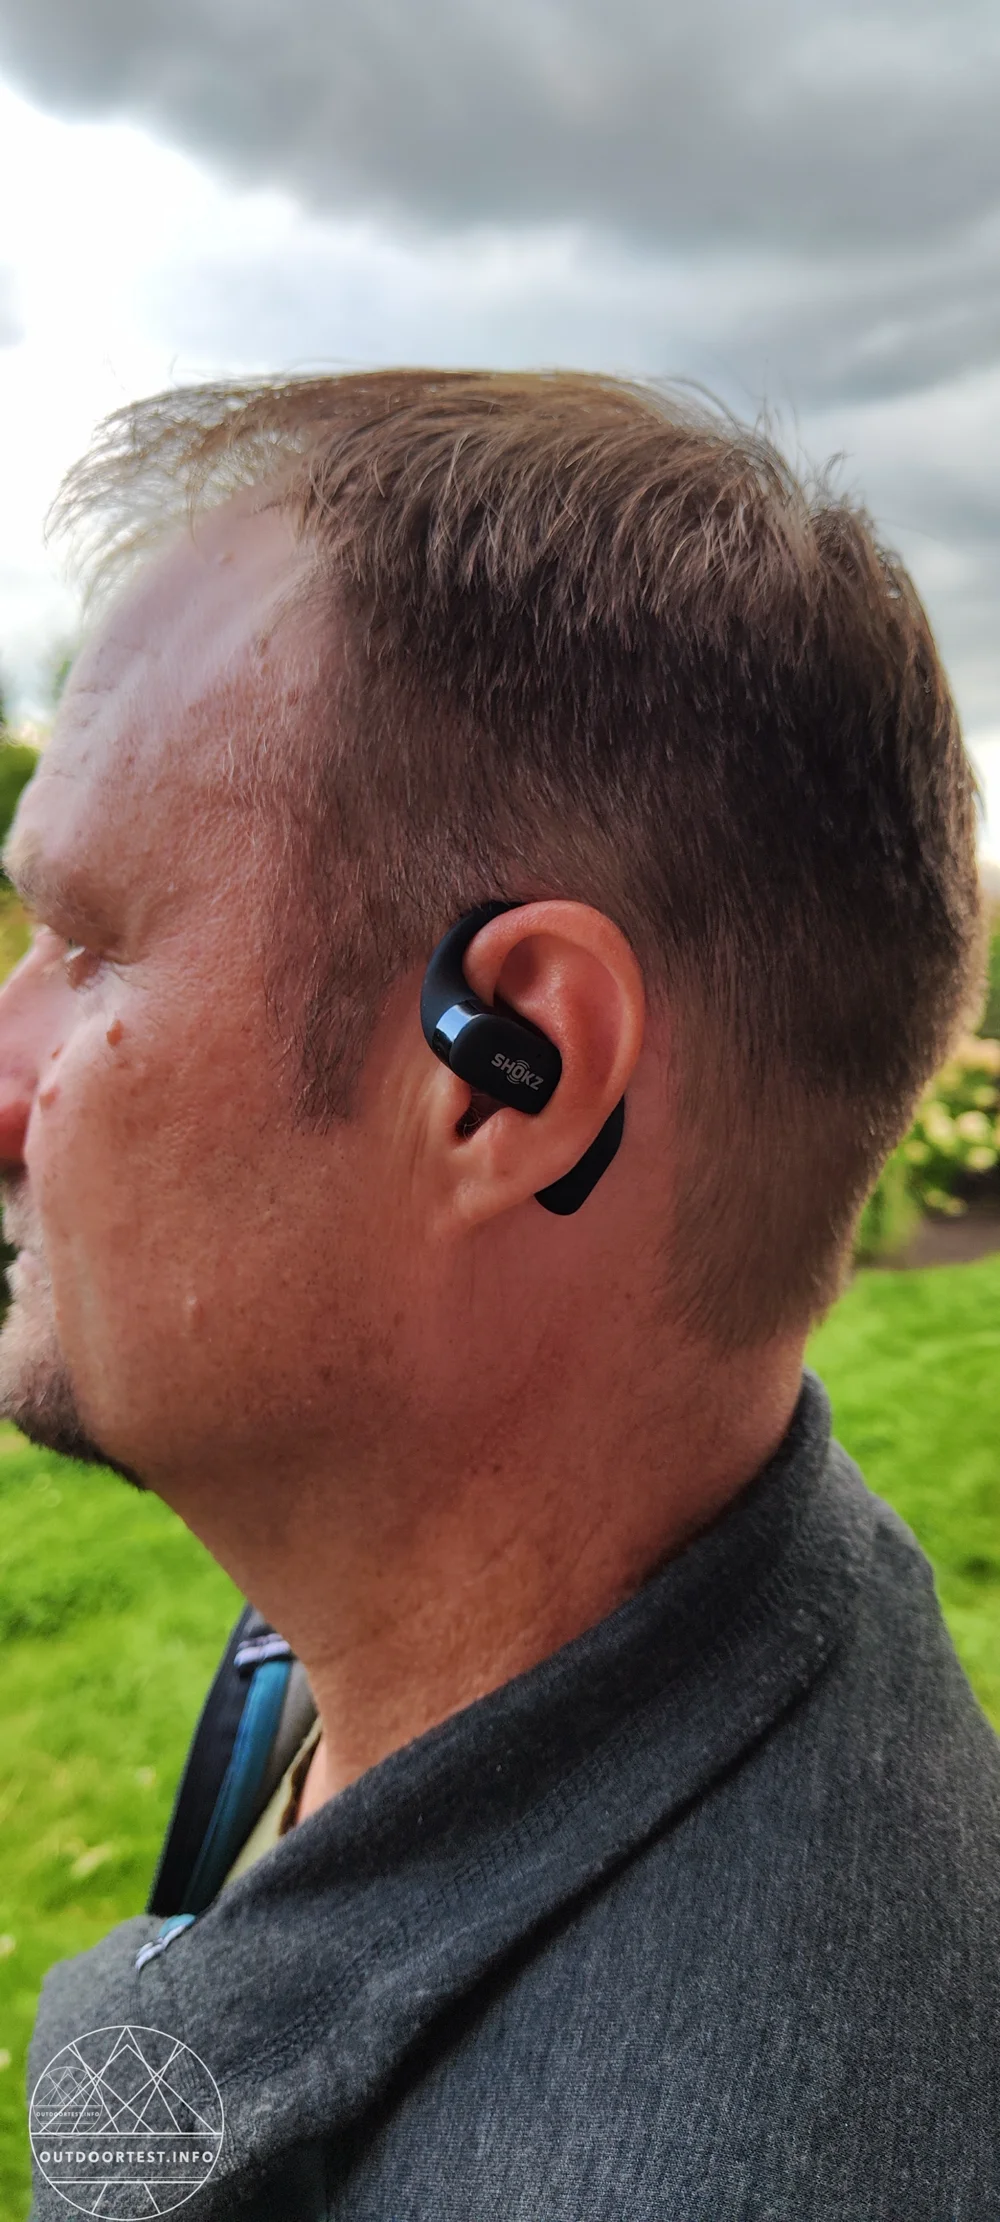 Shokz OpenFit Open-Ear Ohrhörer